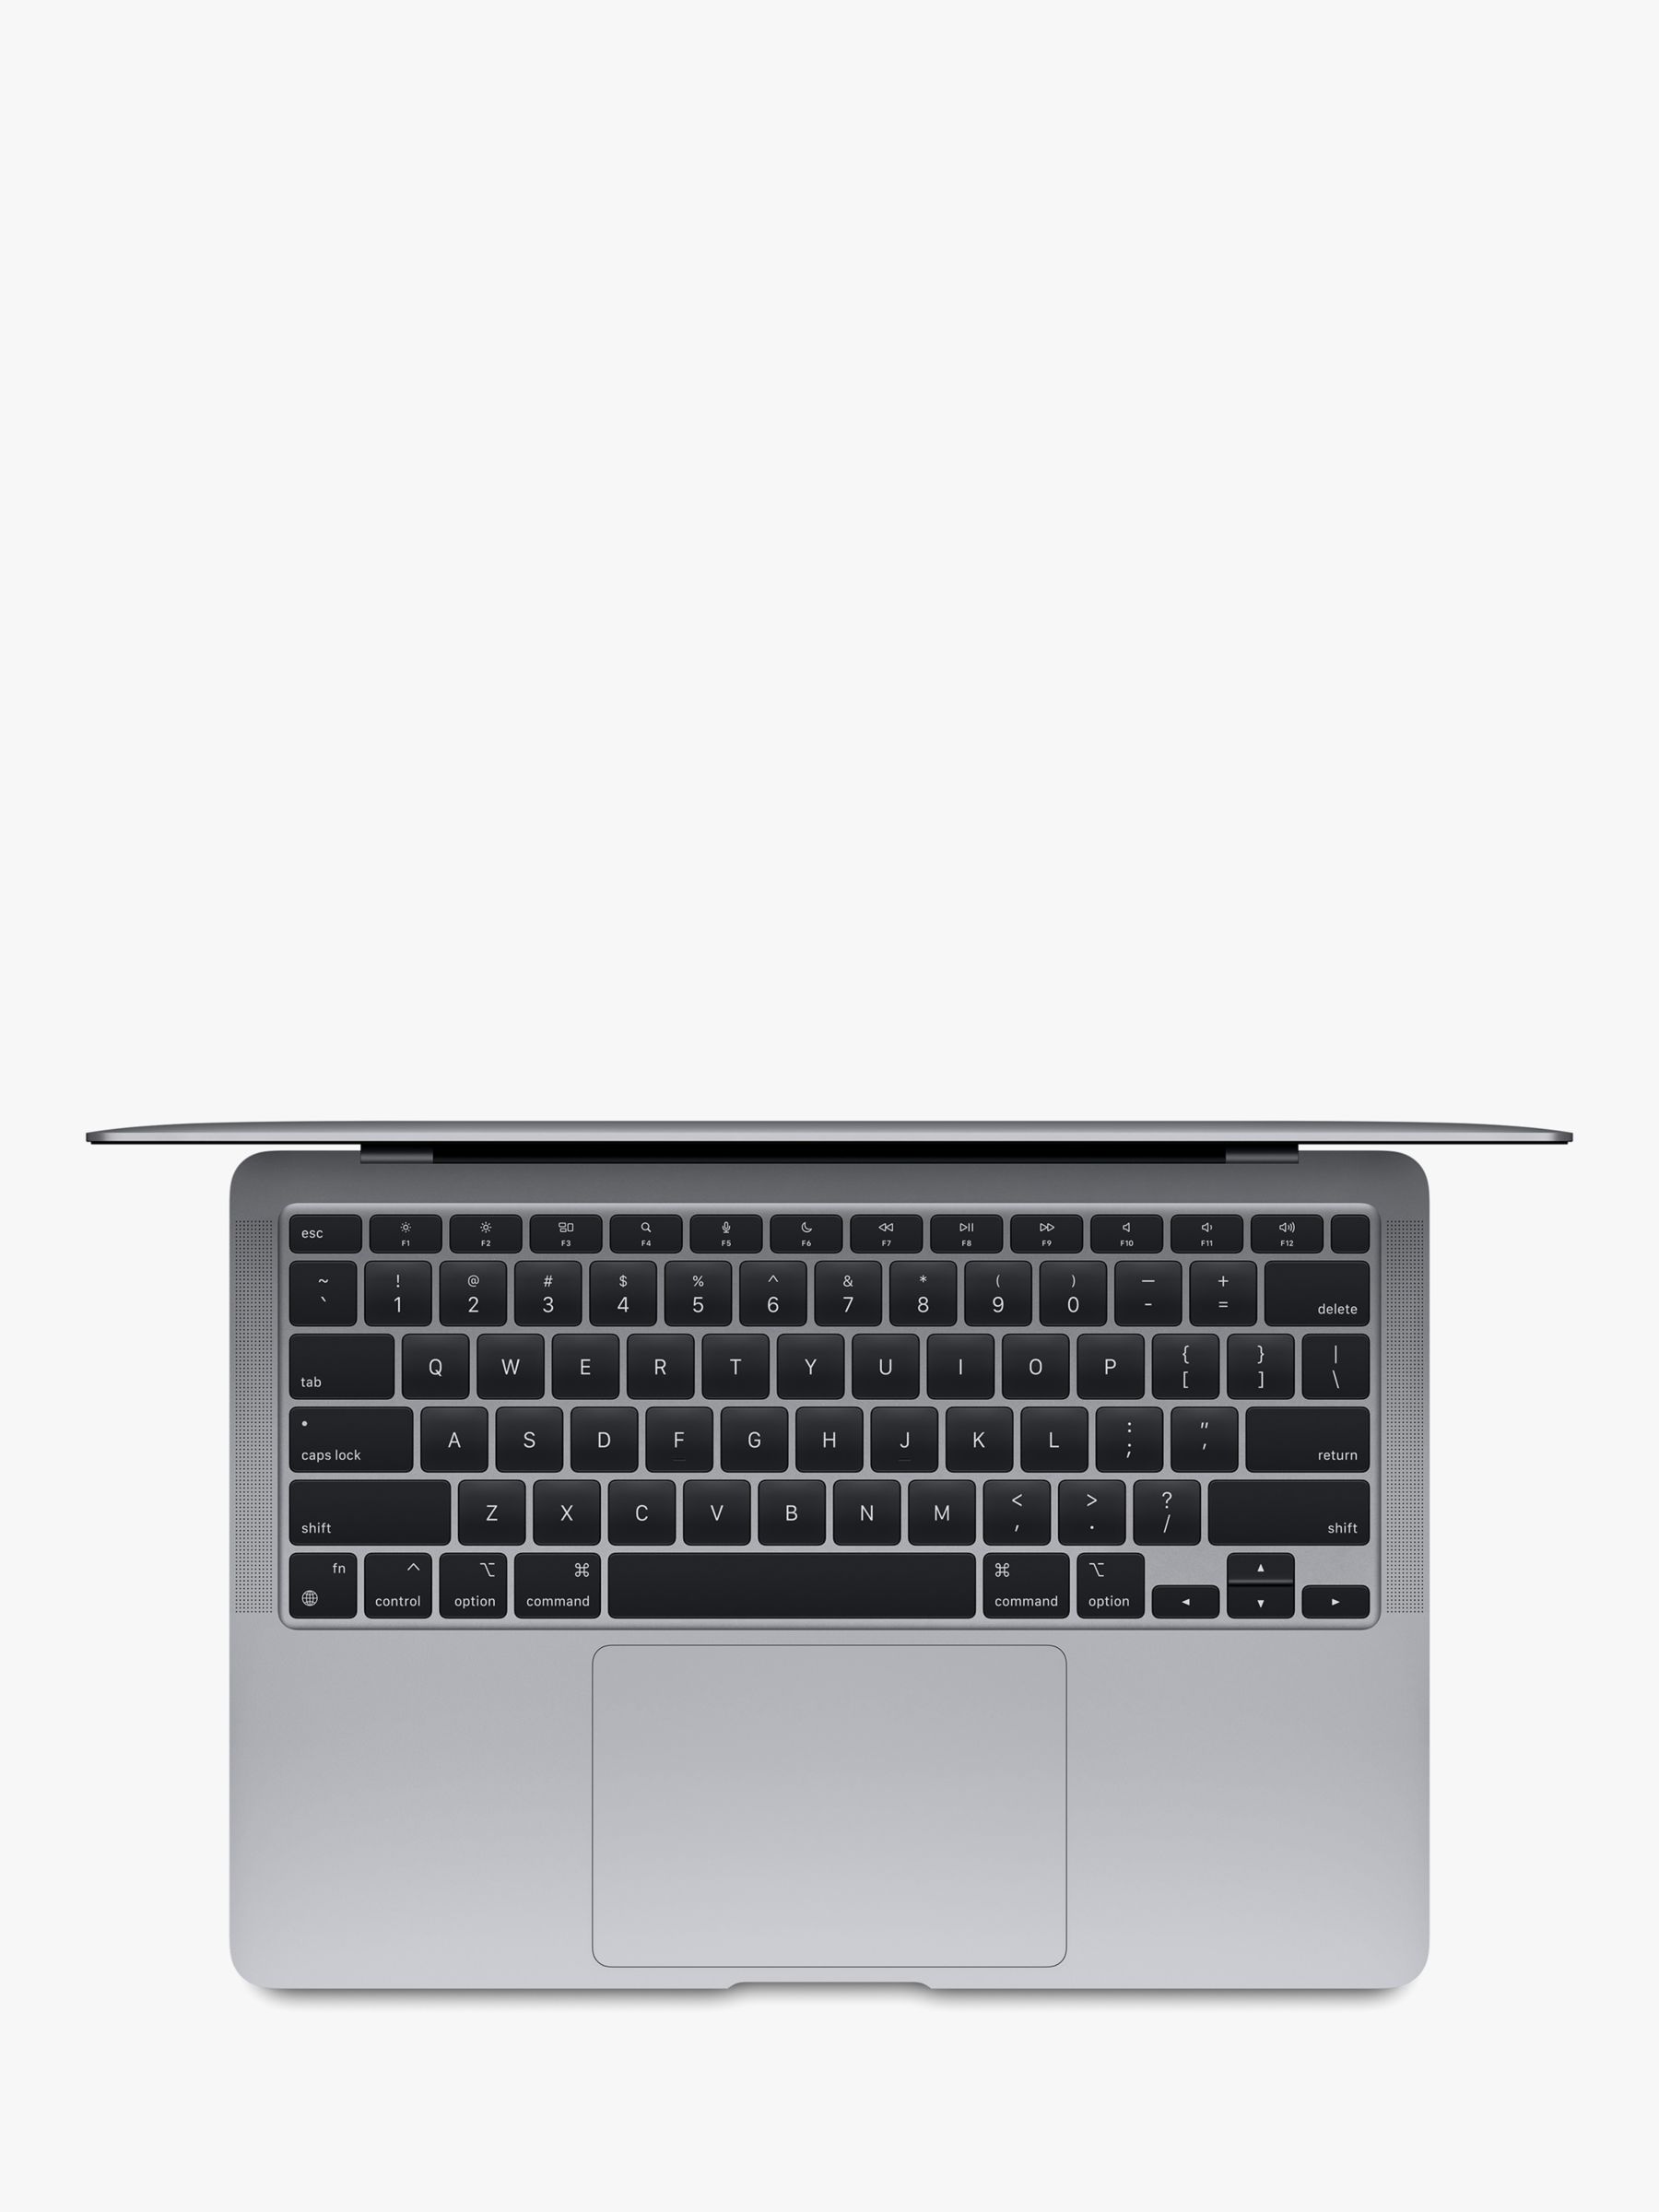 2020 Apple MacBook Air 13.3